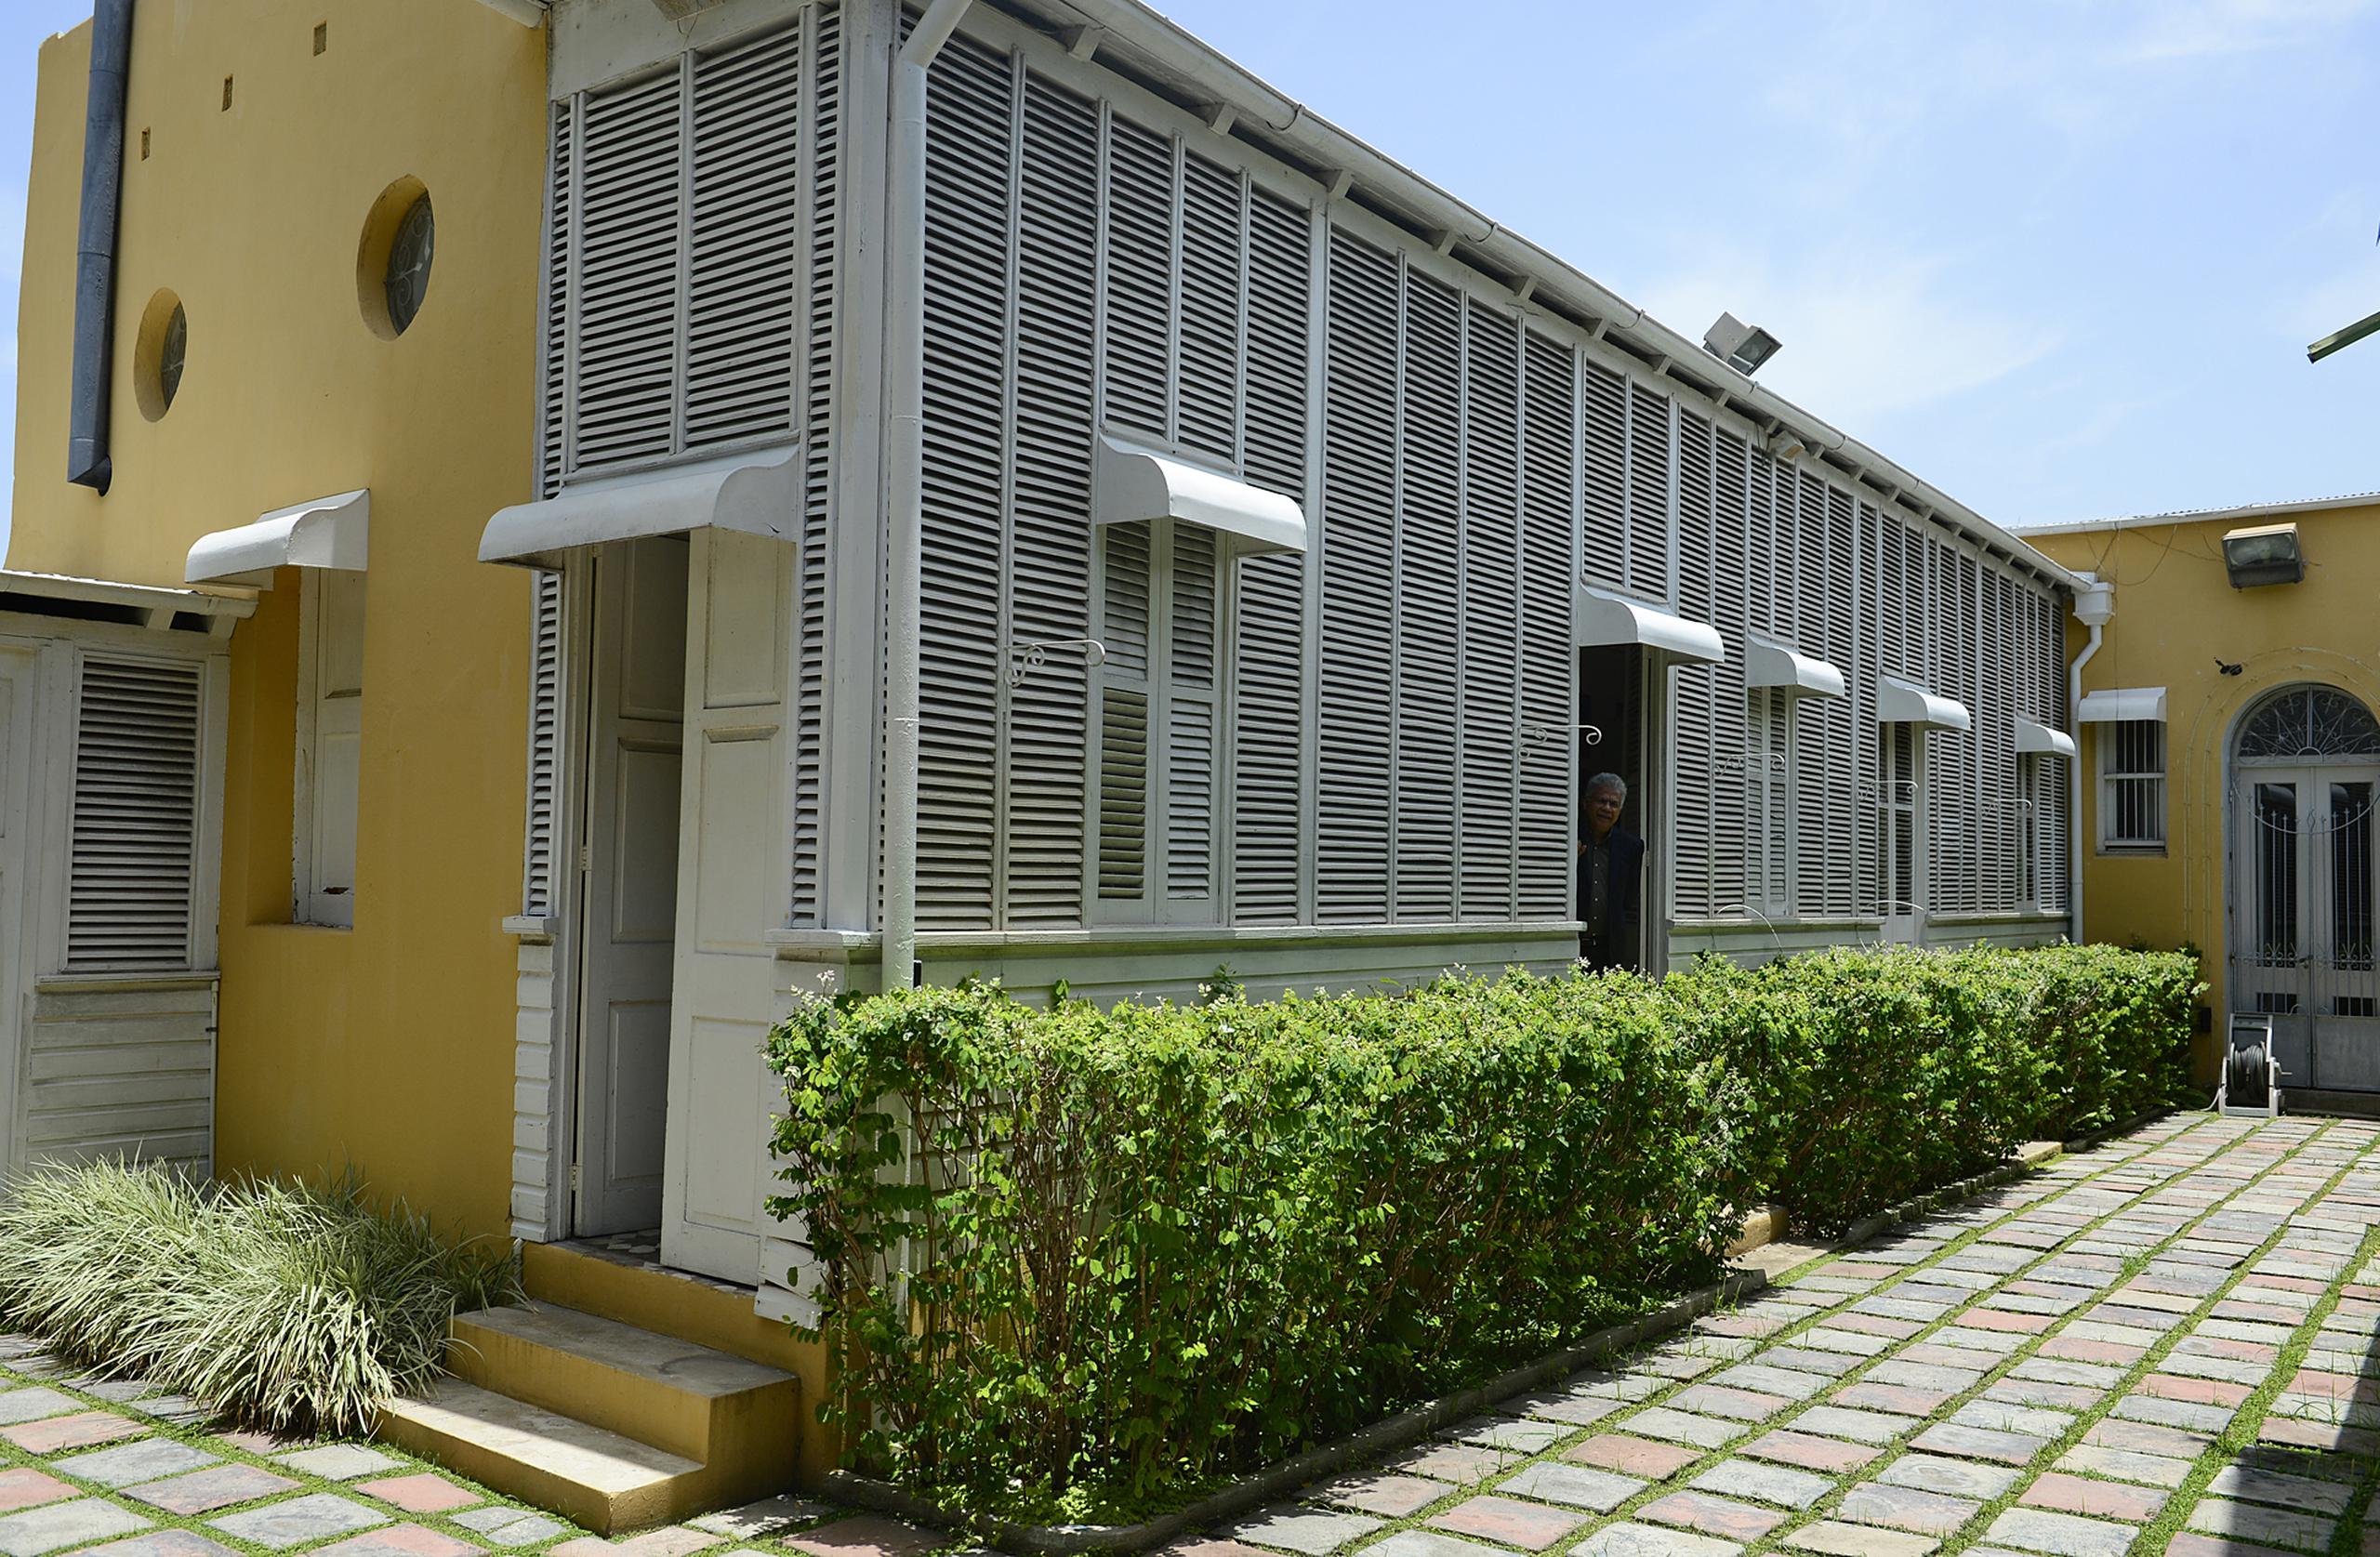 La Casa Paoli está ubicada en la calle Mayor 2648, de la zona antigua e histórica de Ponce, pueblo natal del tenor.